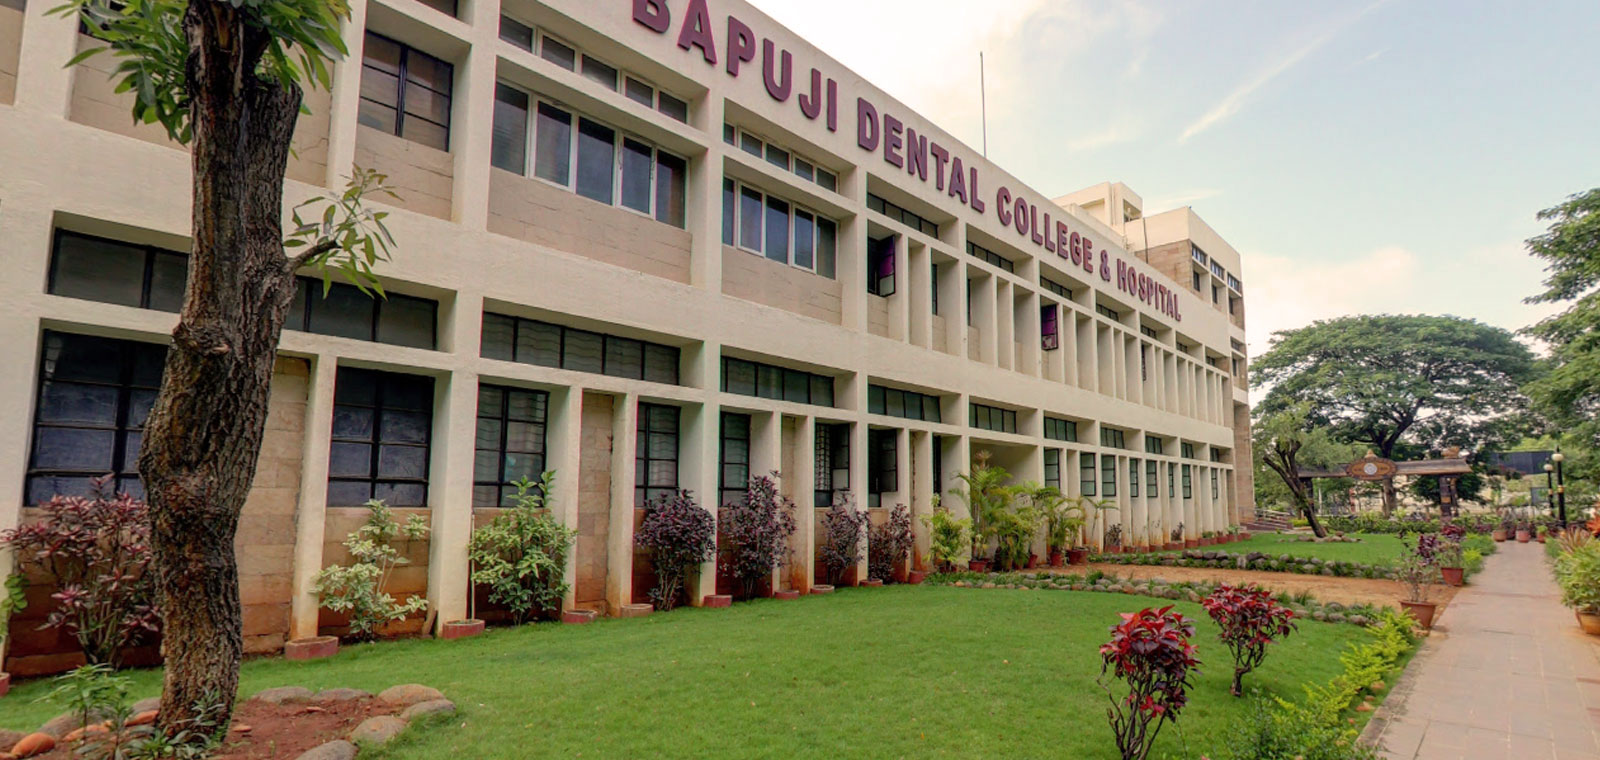 Bapuji Dental College and Hospital, Davangere Image